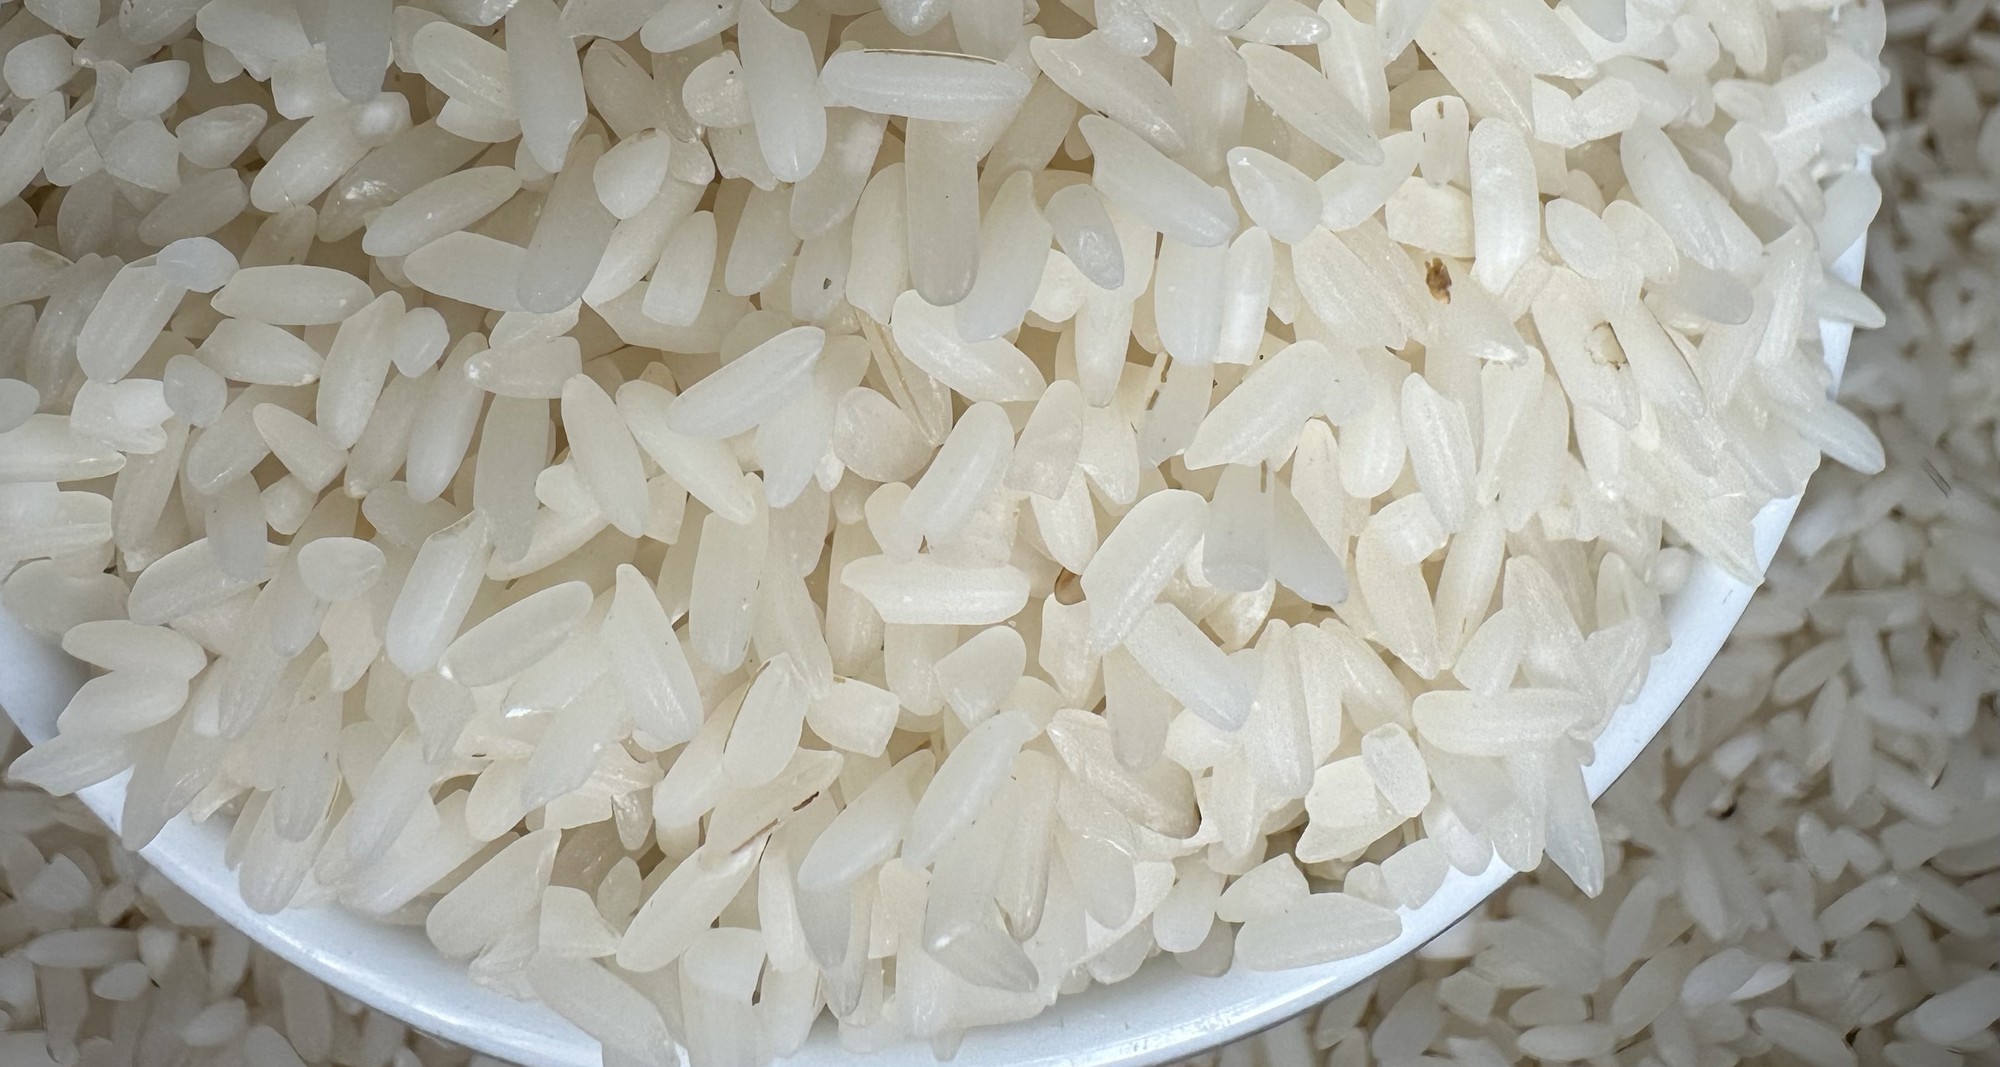 Giá gạo xuất khẩu giảm liên tiếp, trong nước neo cao, doanh nghiệp dừng mua bán